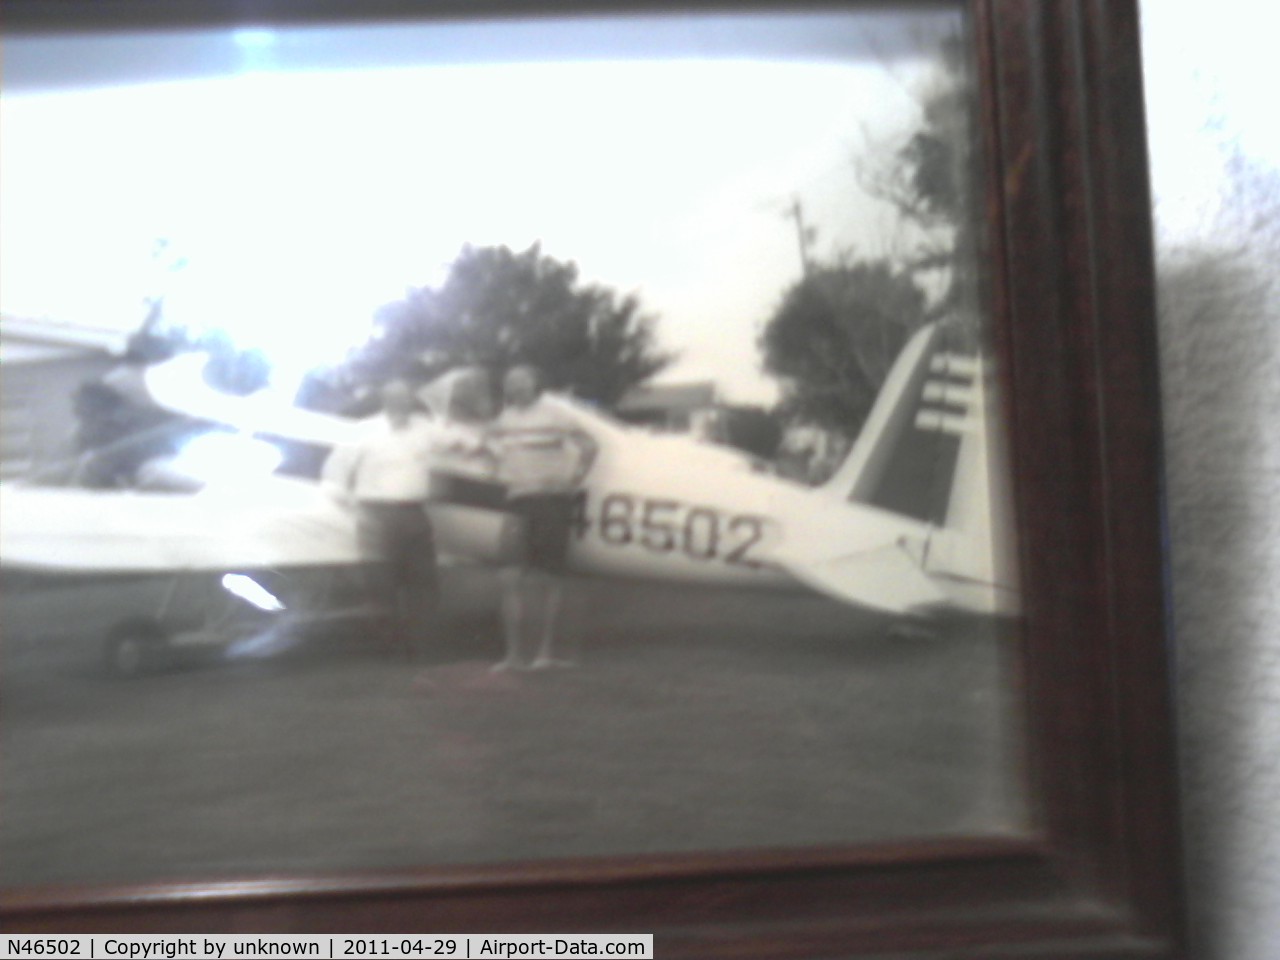 N46502, 1943 Ryan Aeronautical ST3KR C/N 1995, N46502 this photo taken in 1963 in Miami. Florida